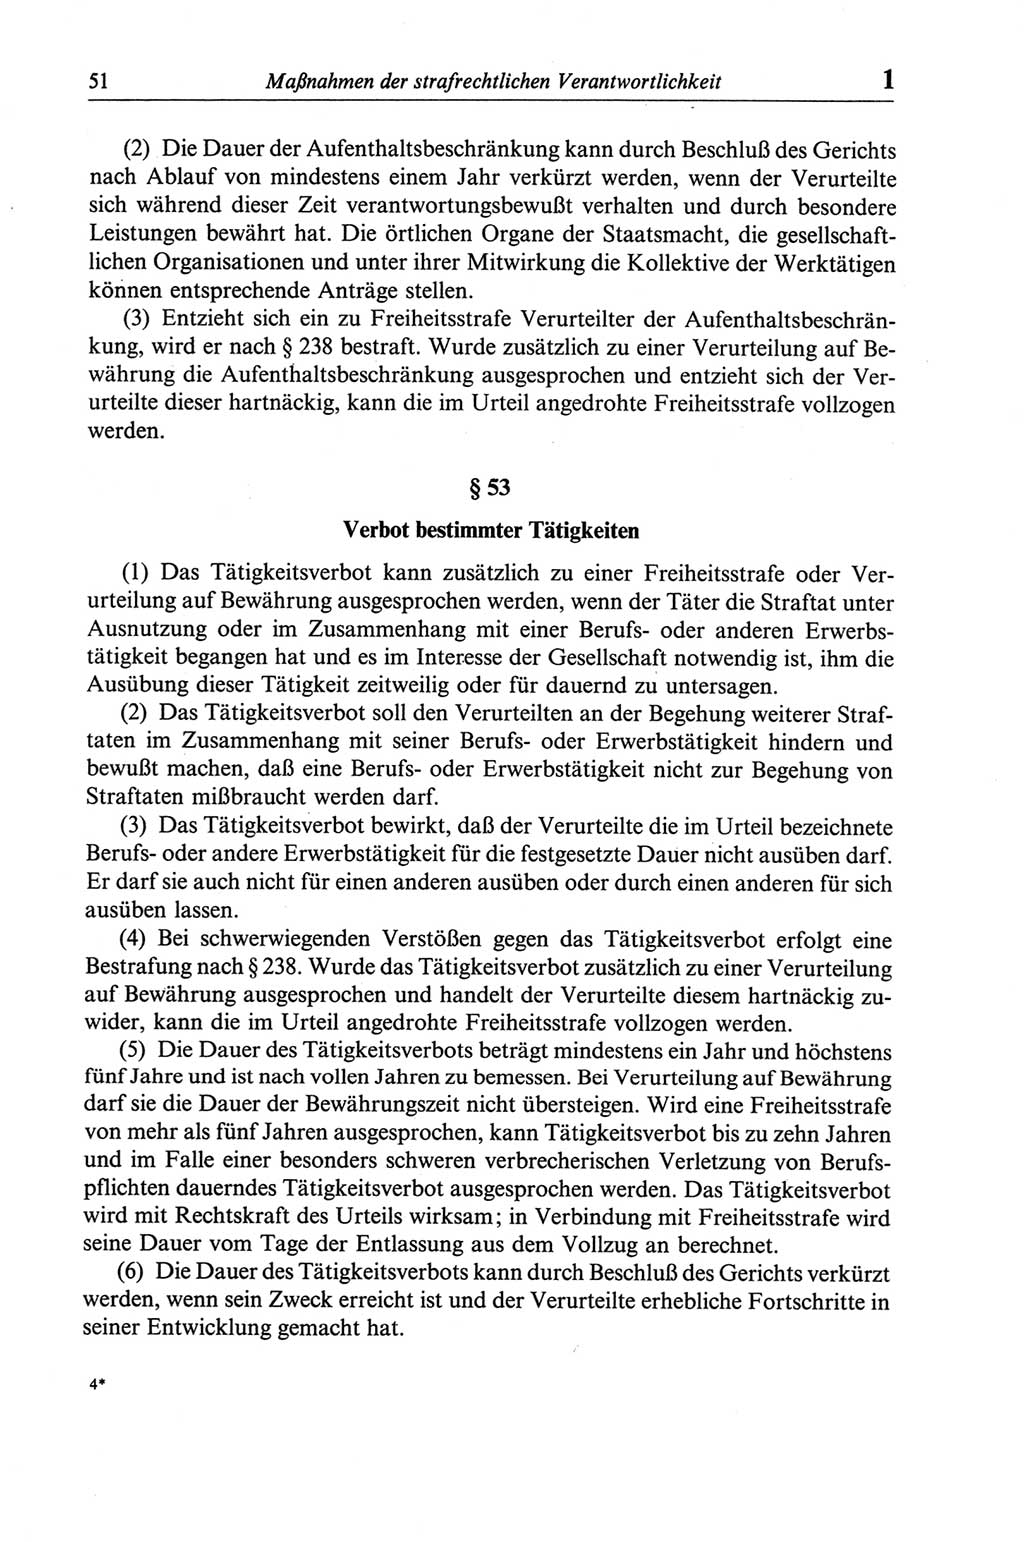 Strafgesetzbuch (StGB) der Deutschen Demokratischen Republik (DDR) und angrenzende Gesetze und Bestimmungen 1968, Seite 51 (StGB Ges. Best. DDR 1968, S. 51)